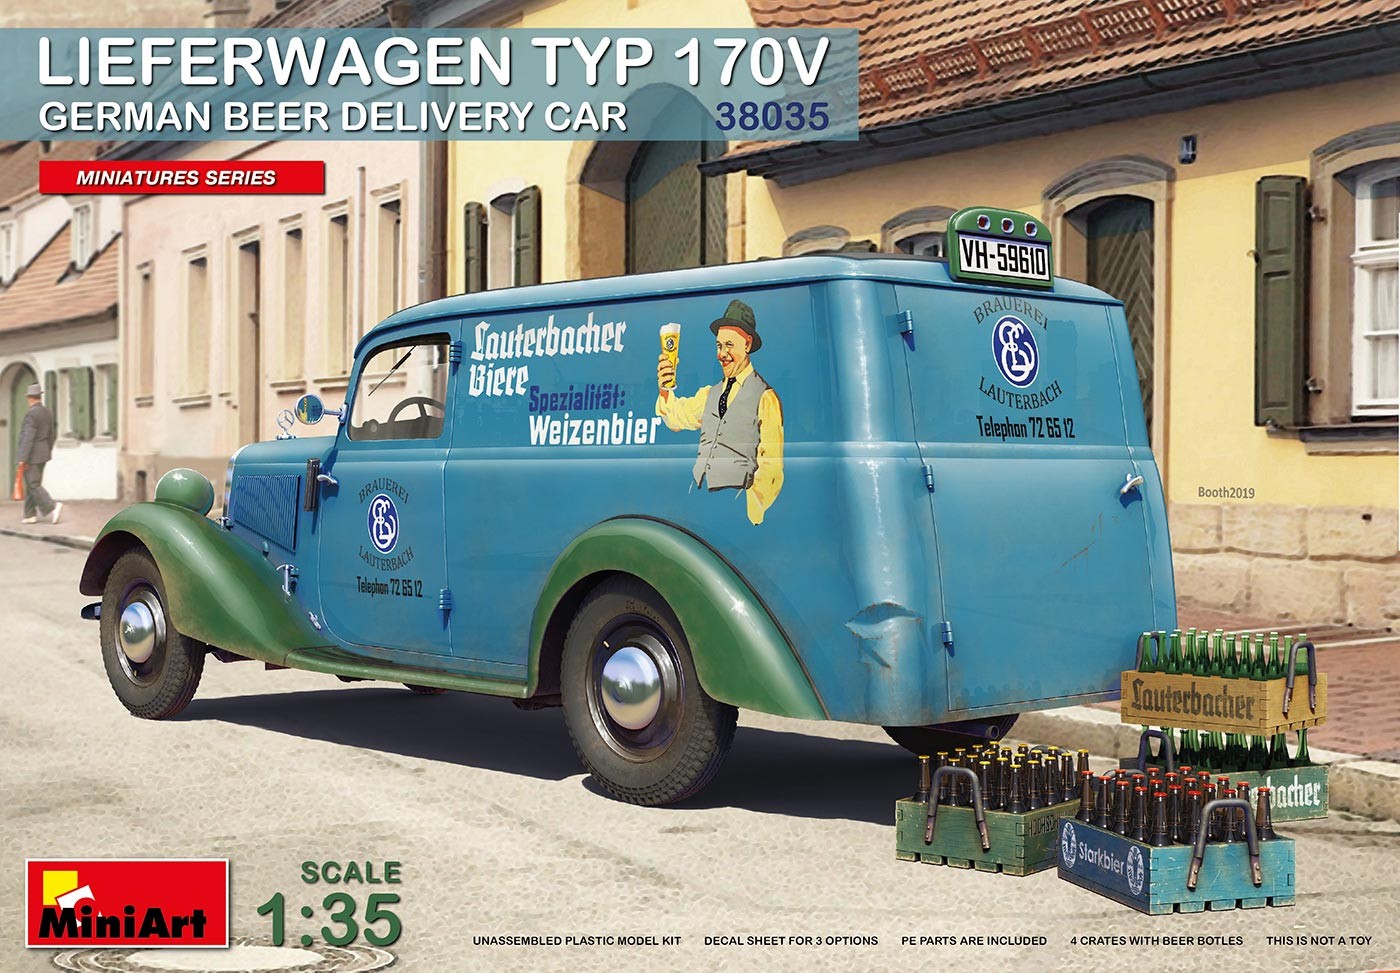  Mini Art Lieferwagen Typ 170V German Beer CarMODÈLE HAUTEMENT DÉTAIL